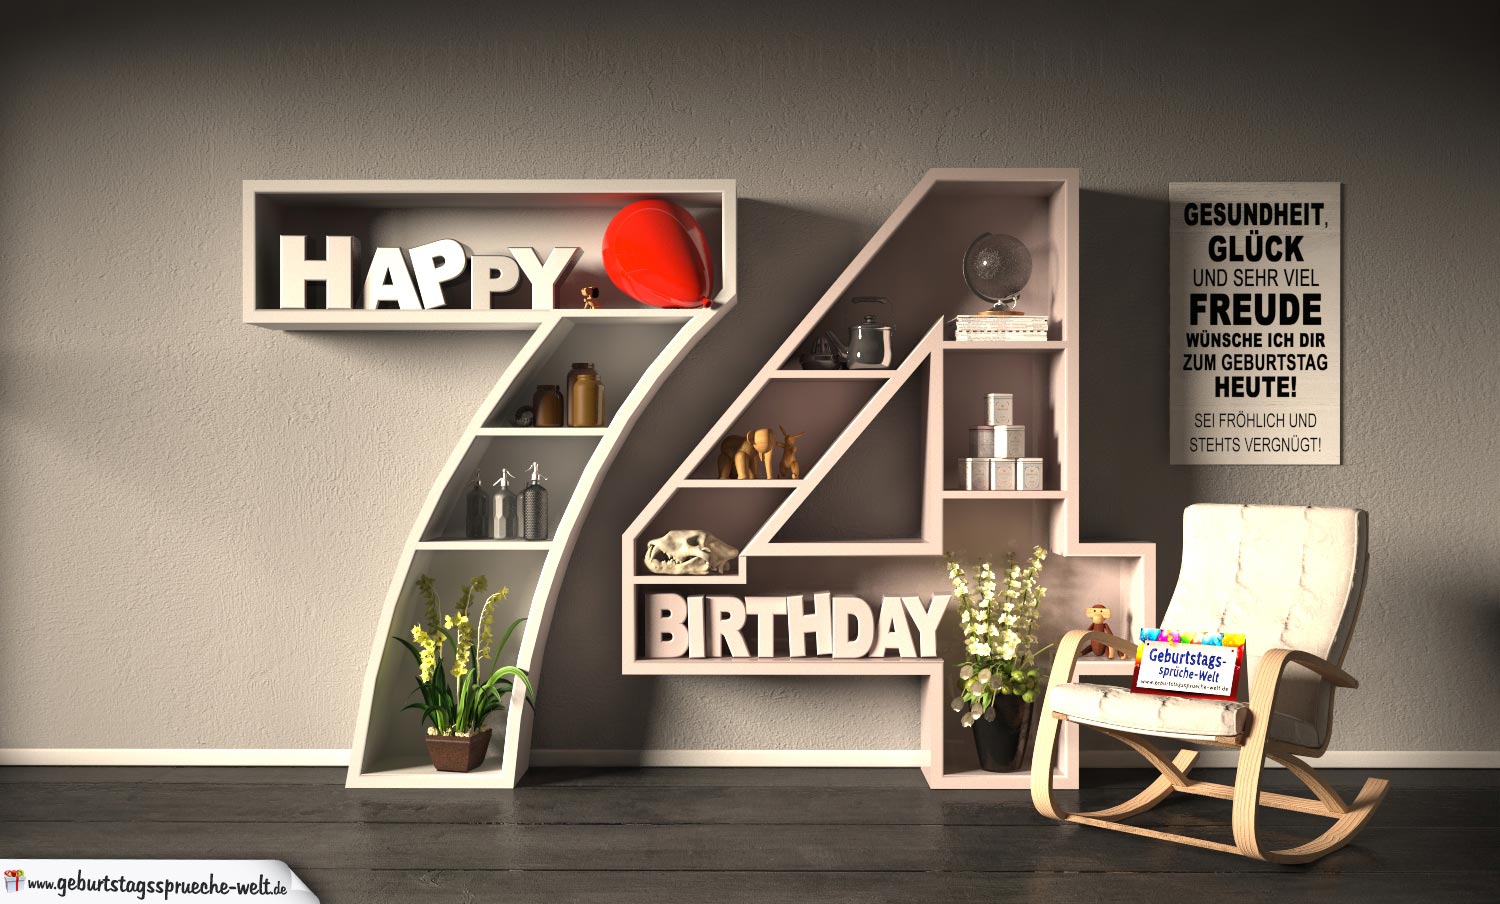 45++ Sprueche zum 79 geburtstag , Kostenlose Geburtstagskarte Happy Birthday mit Spruch zum 74. Geburtstag GeburtstagssprücheWelt